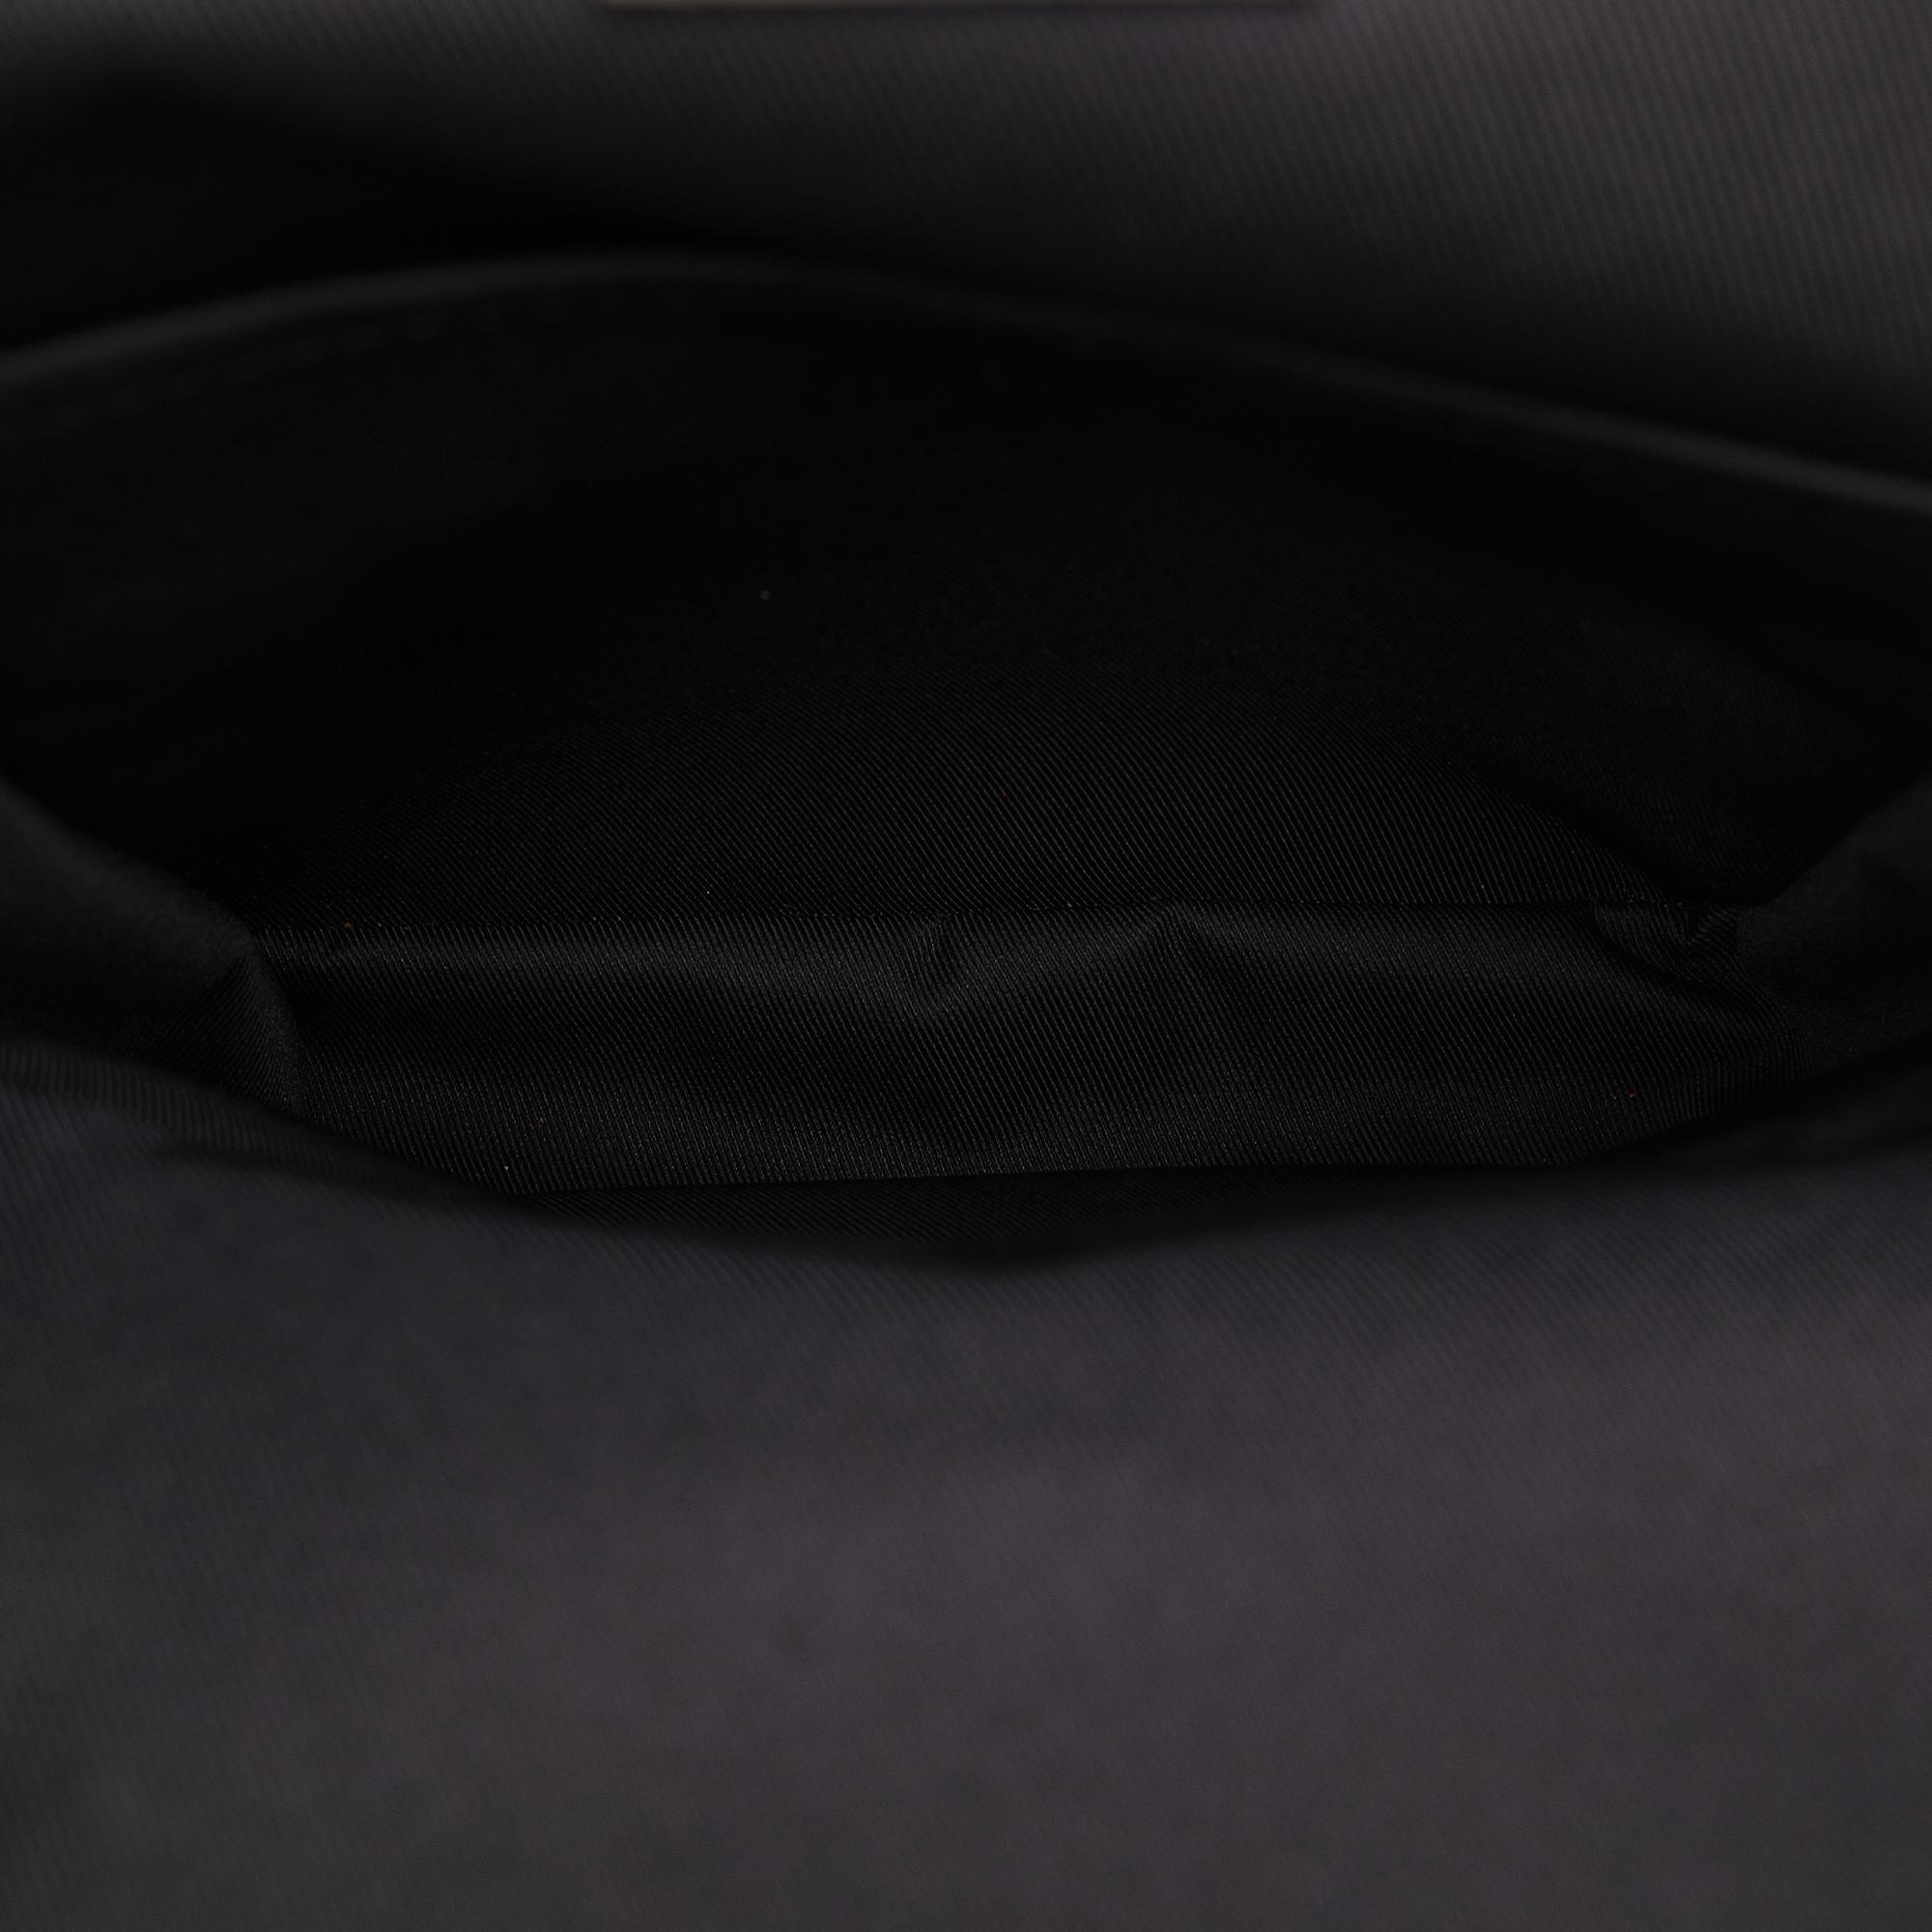 Louis Vuitton Black/Grey Damier Graphite Avenue Sling